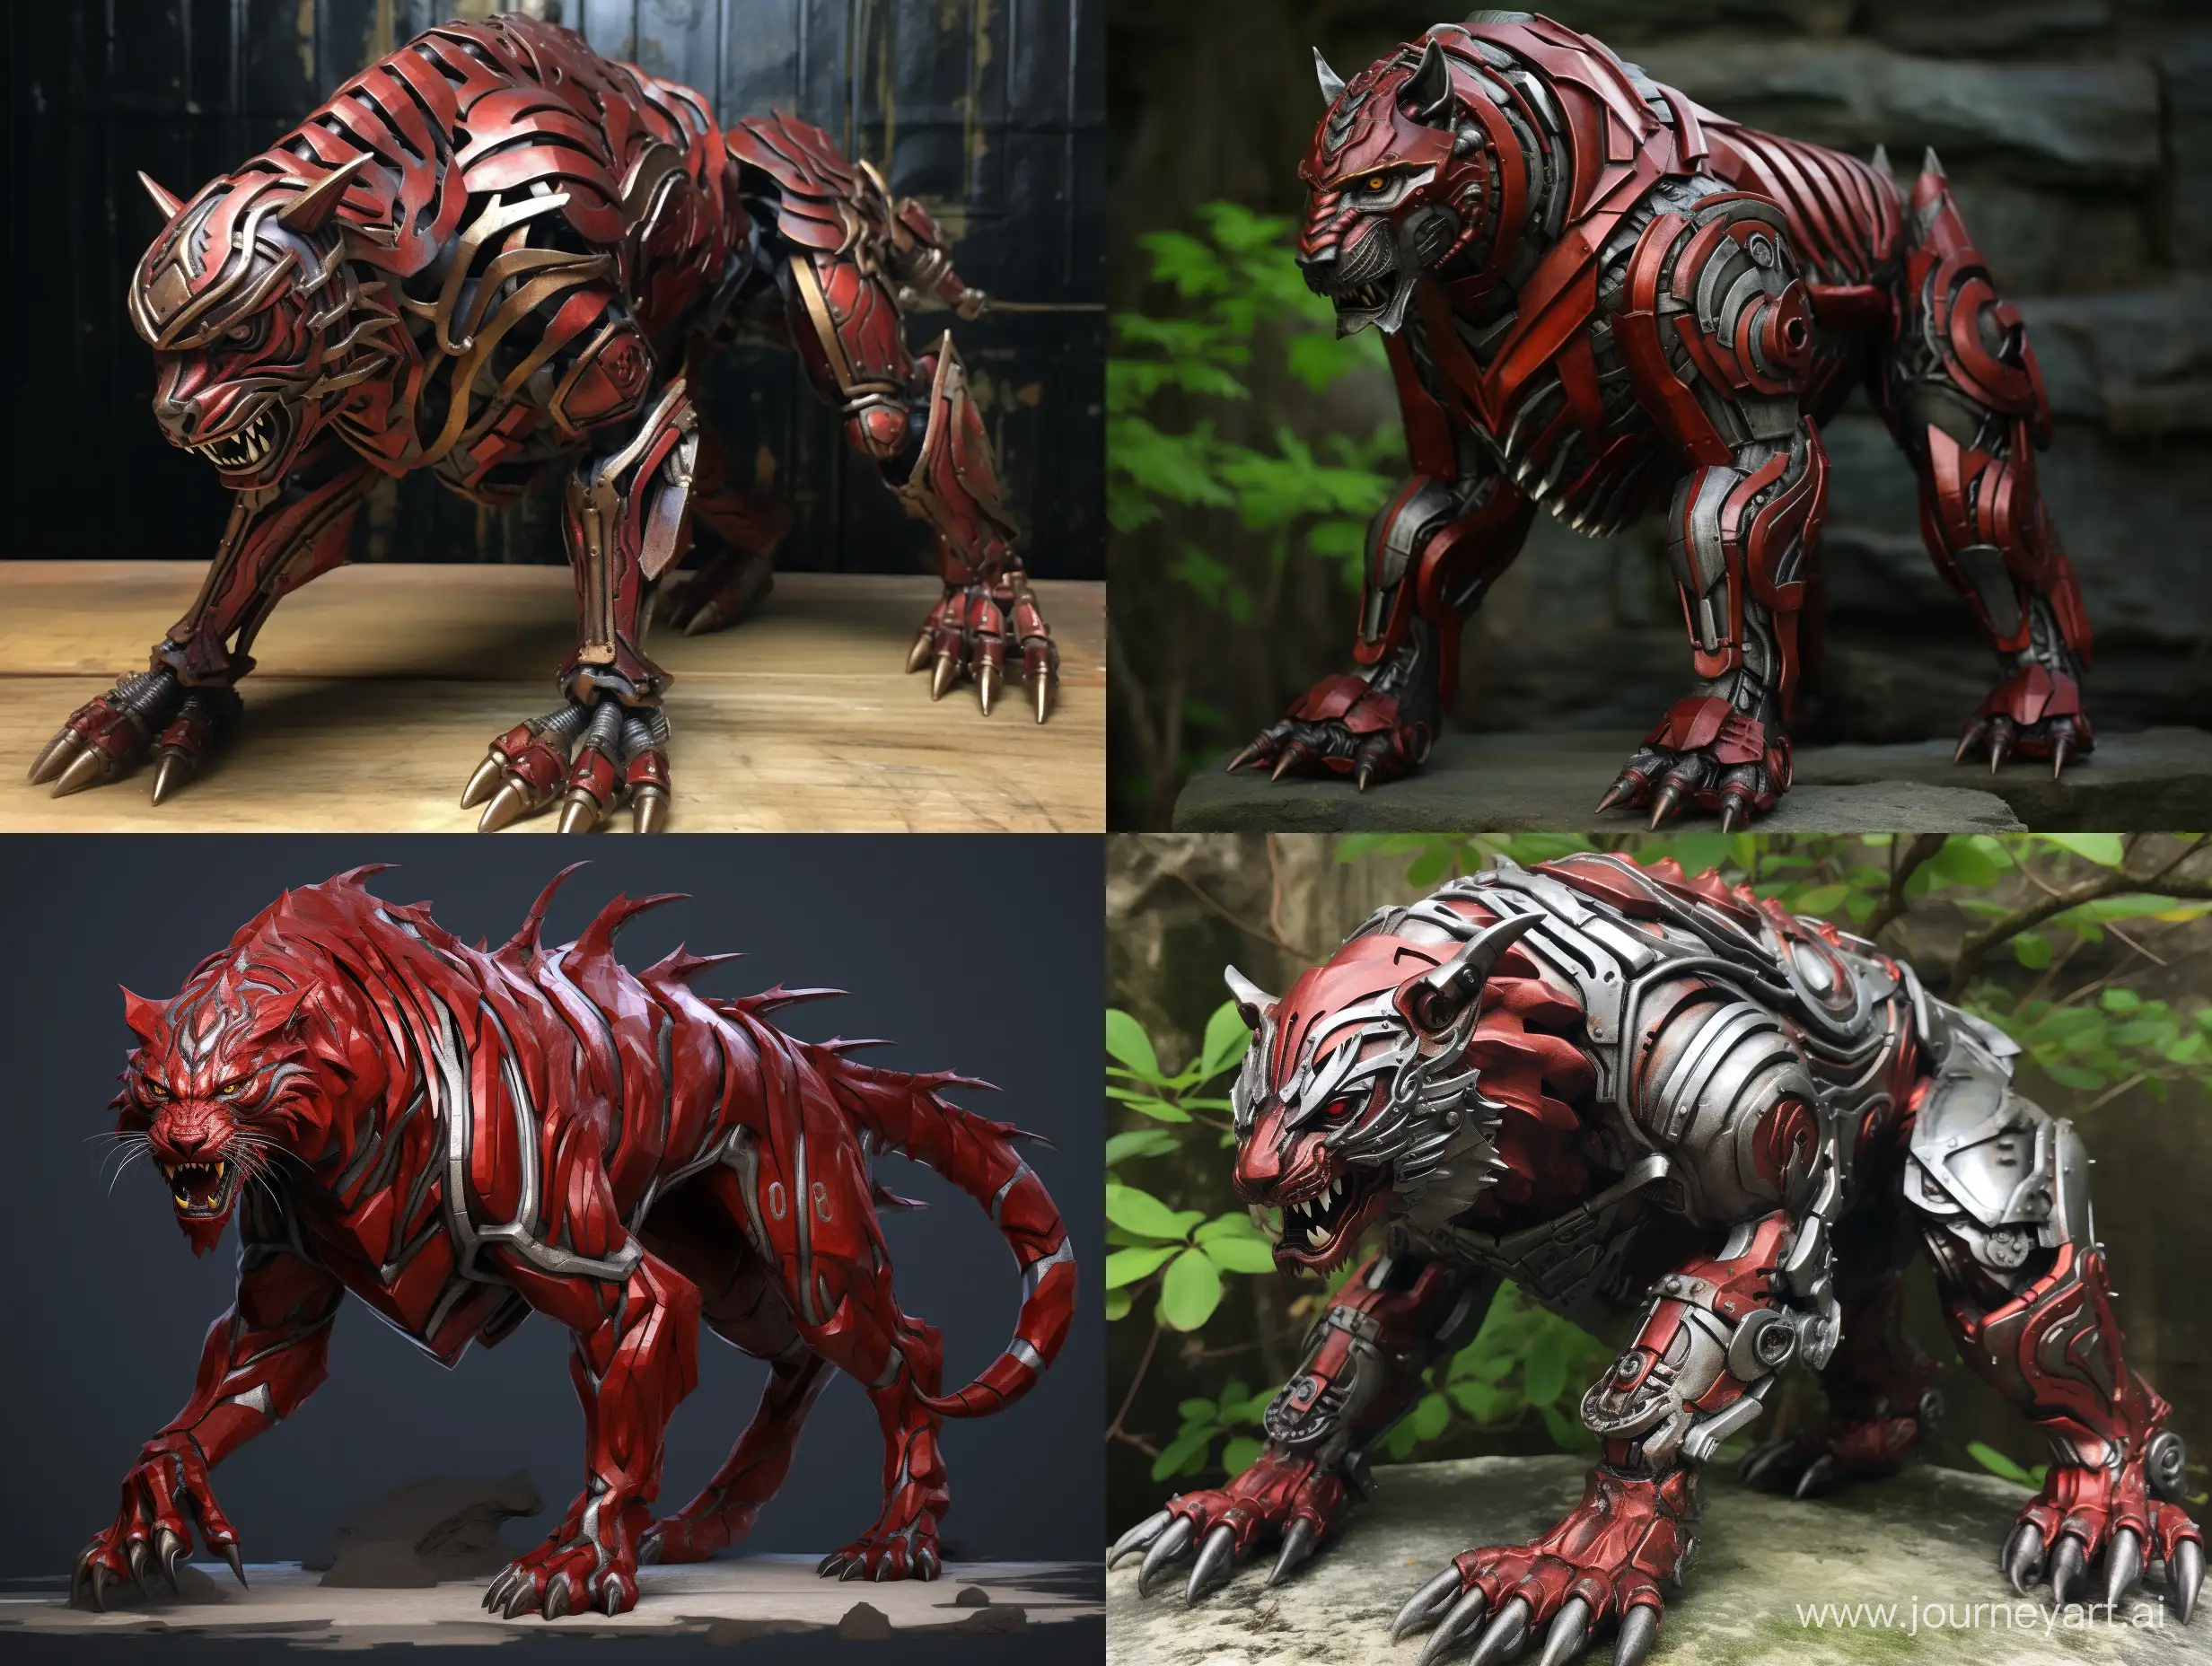 Majestic-Wild-Iron-Tiger-in-Red-Metallic-Setting